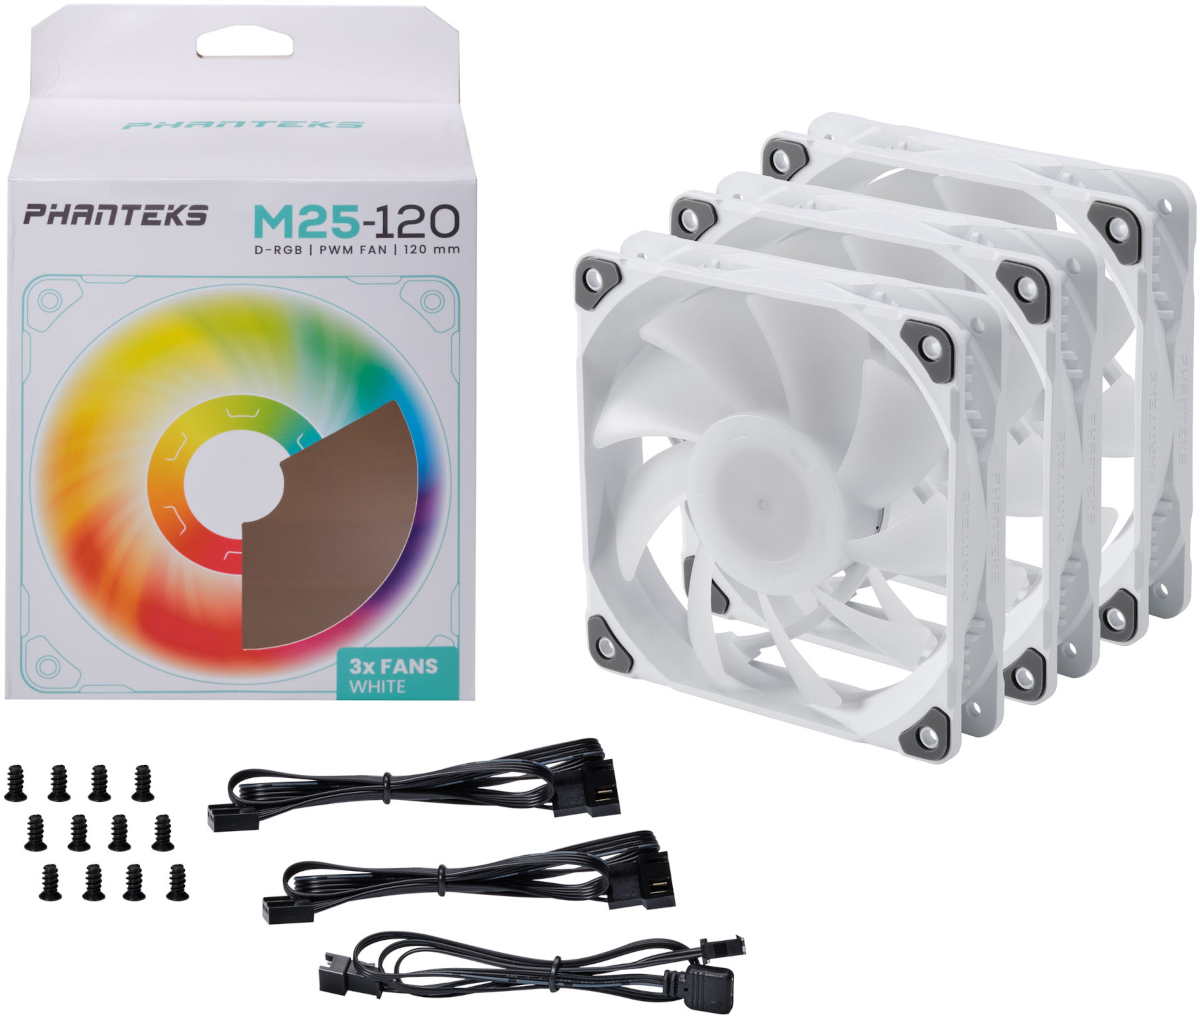 Phanteks M25 to gratka dla fanów wydajności, ciszy i RGB LED